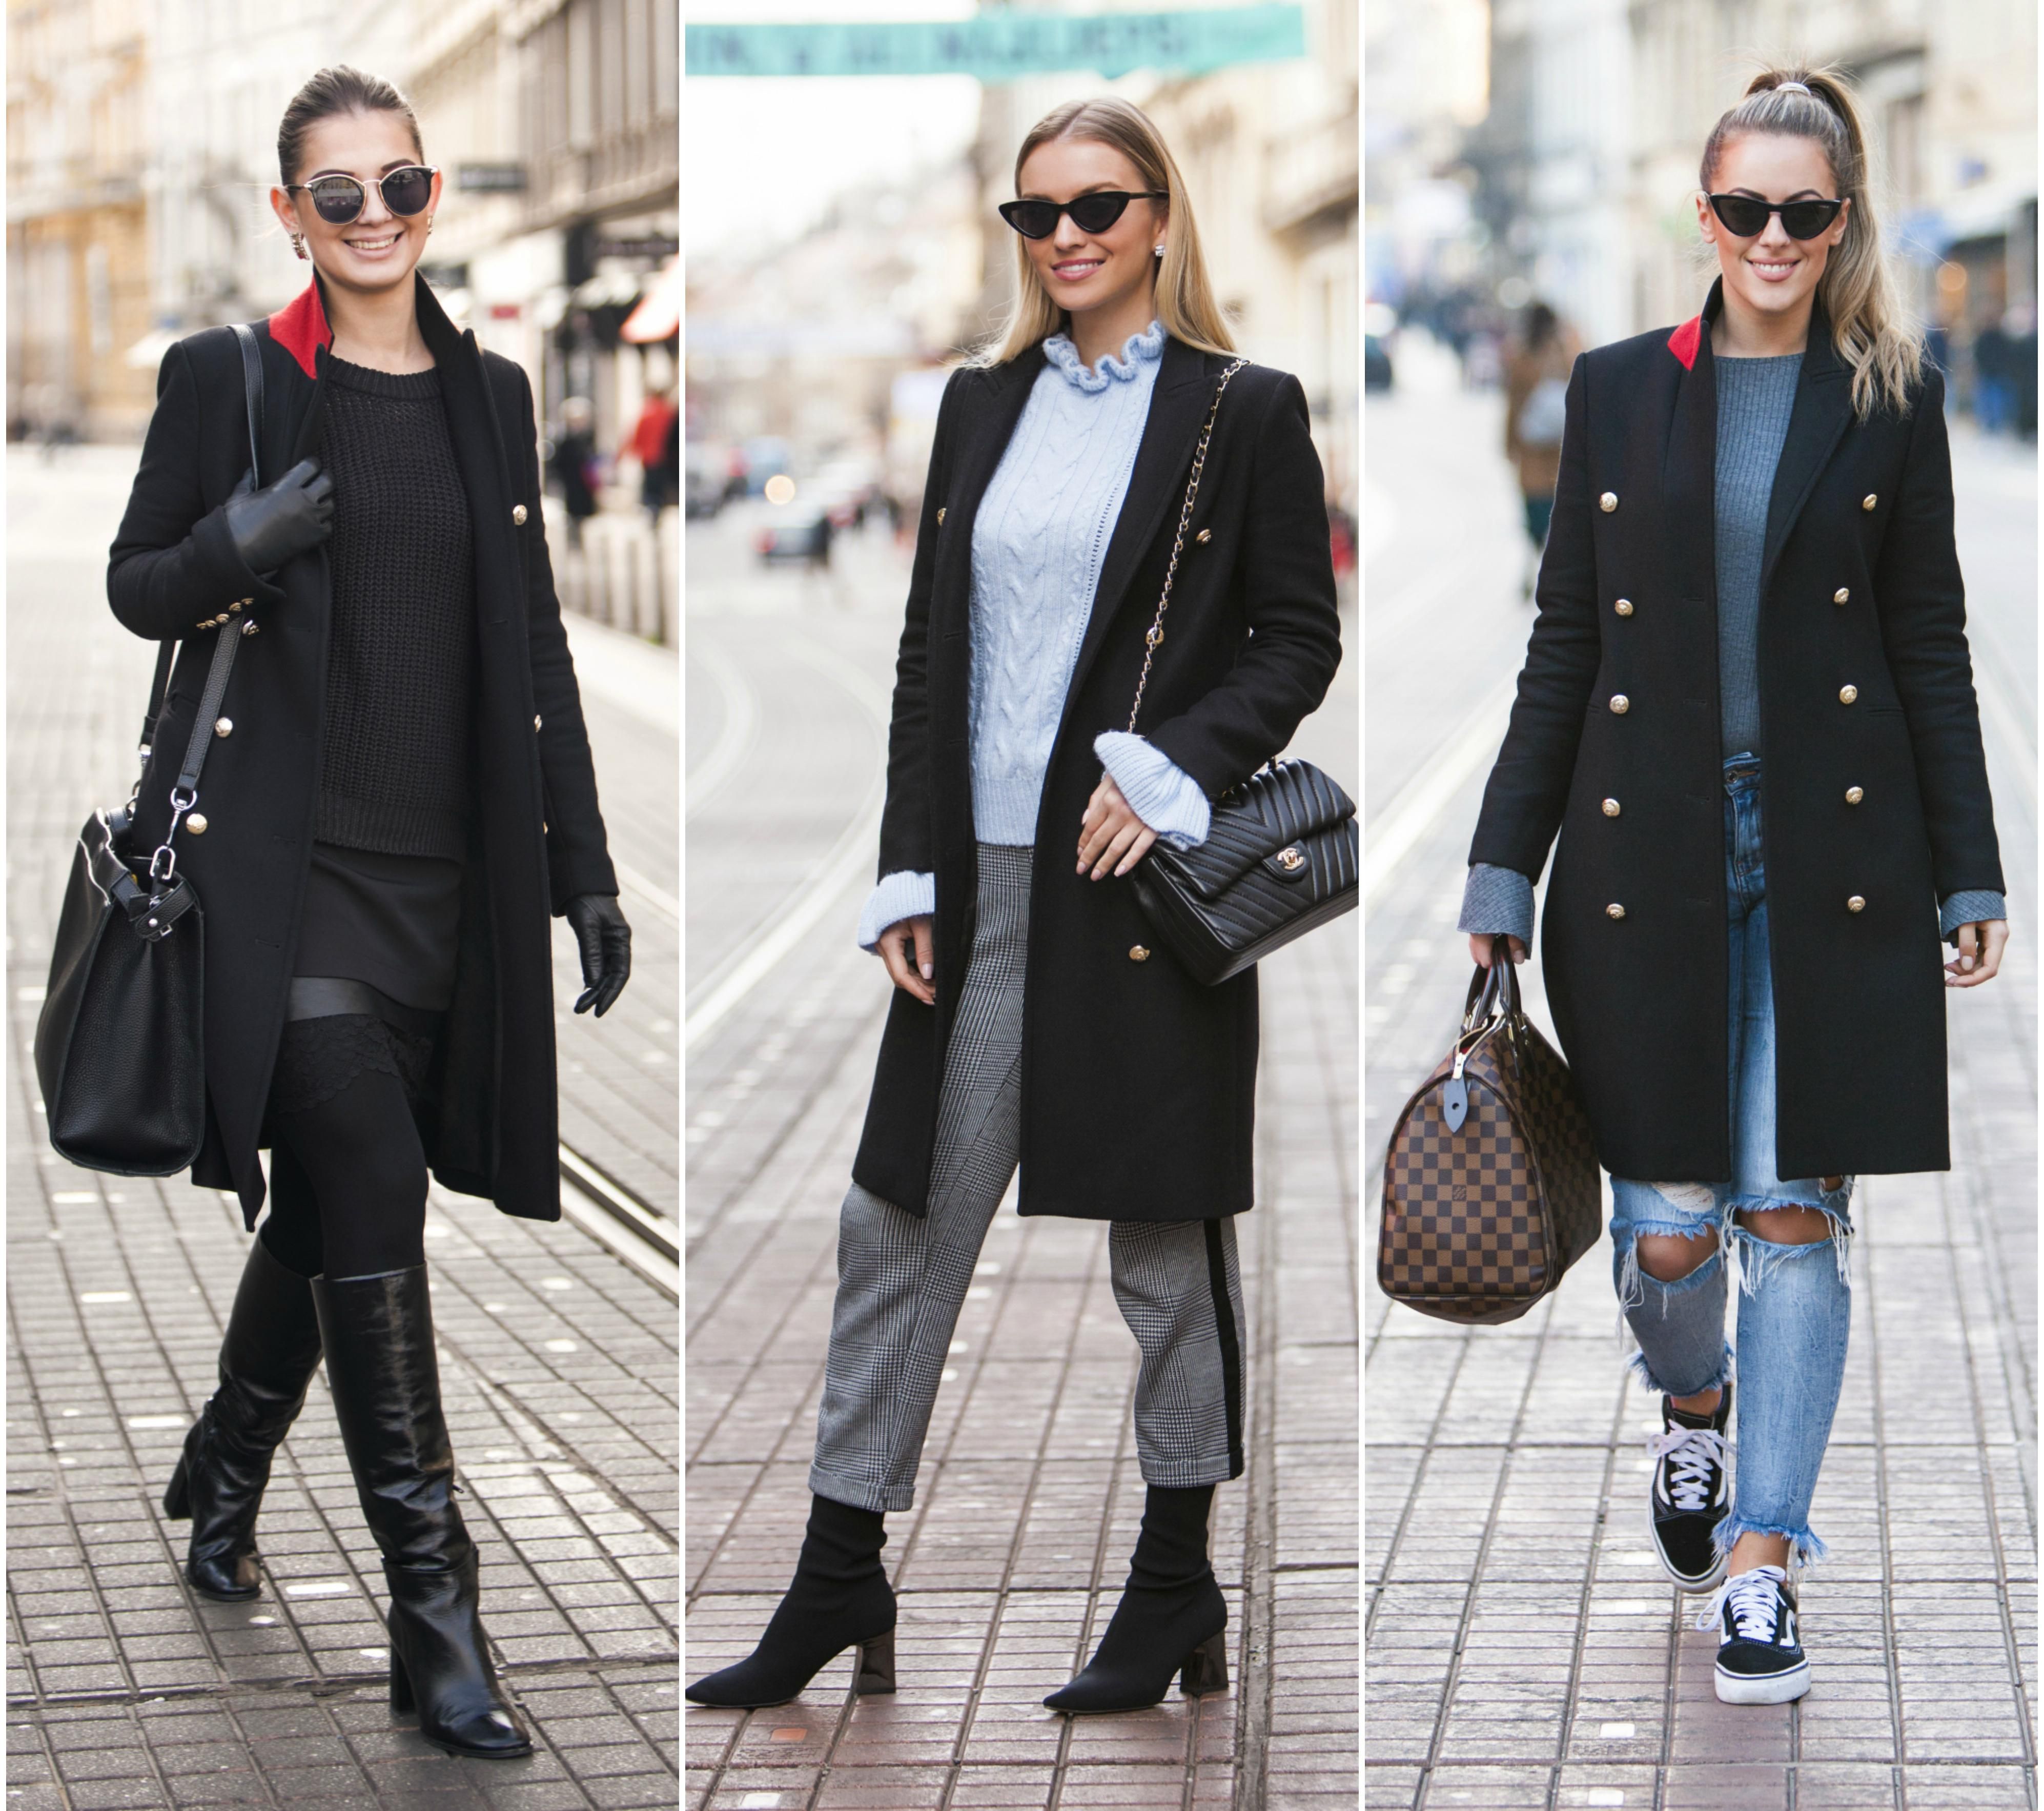 Tri prekrasne djevojke u najpopularnijem kaputu sezone - koja ga bolje nosi?